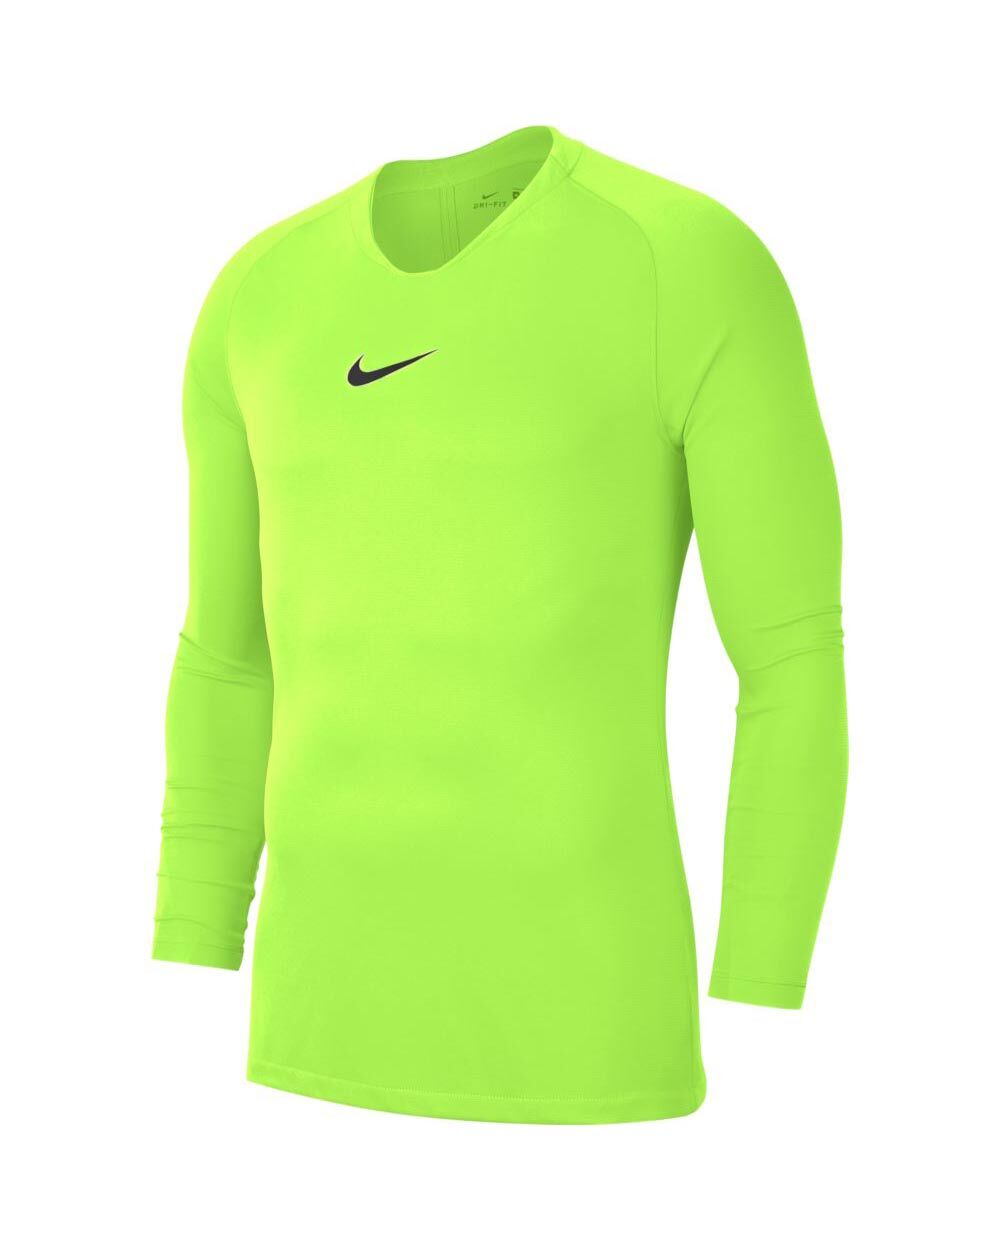 Nike Maglia Tight Fit Park First Layer Giallo Fluorescente per Uomo AV2609-702 L